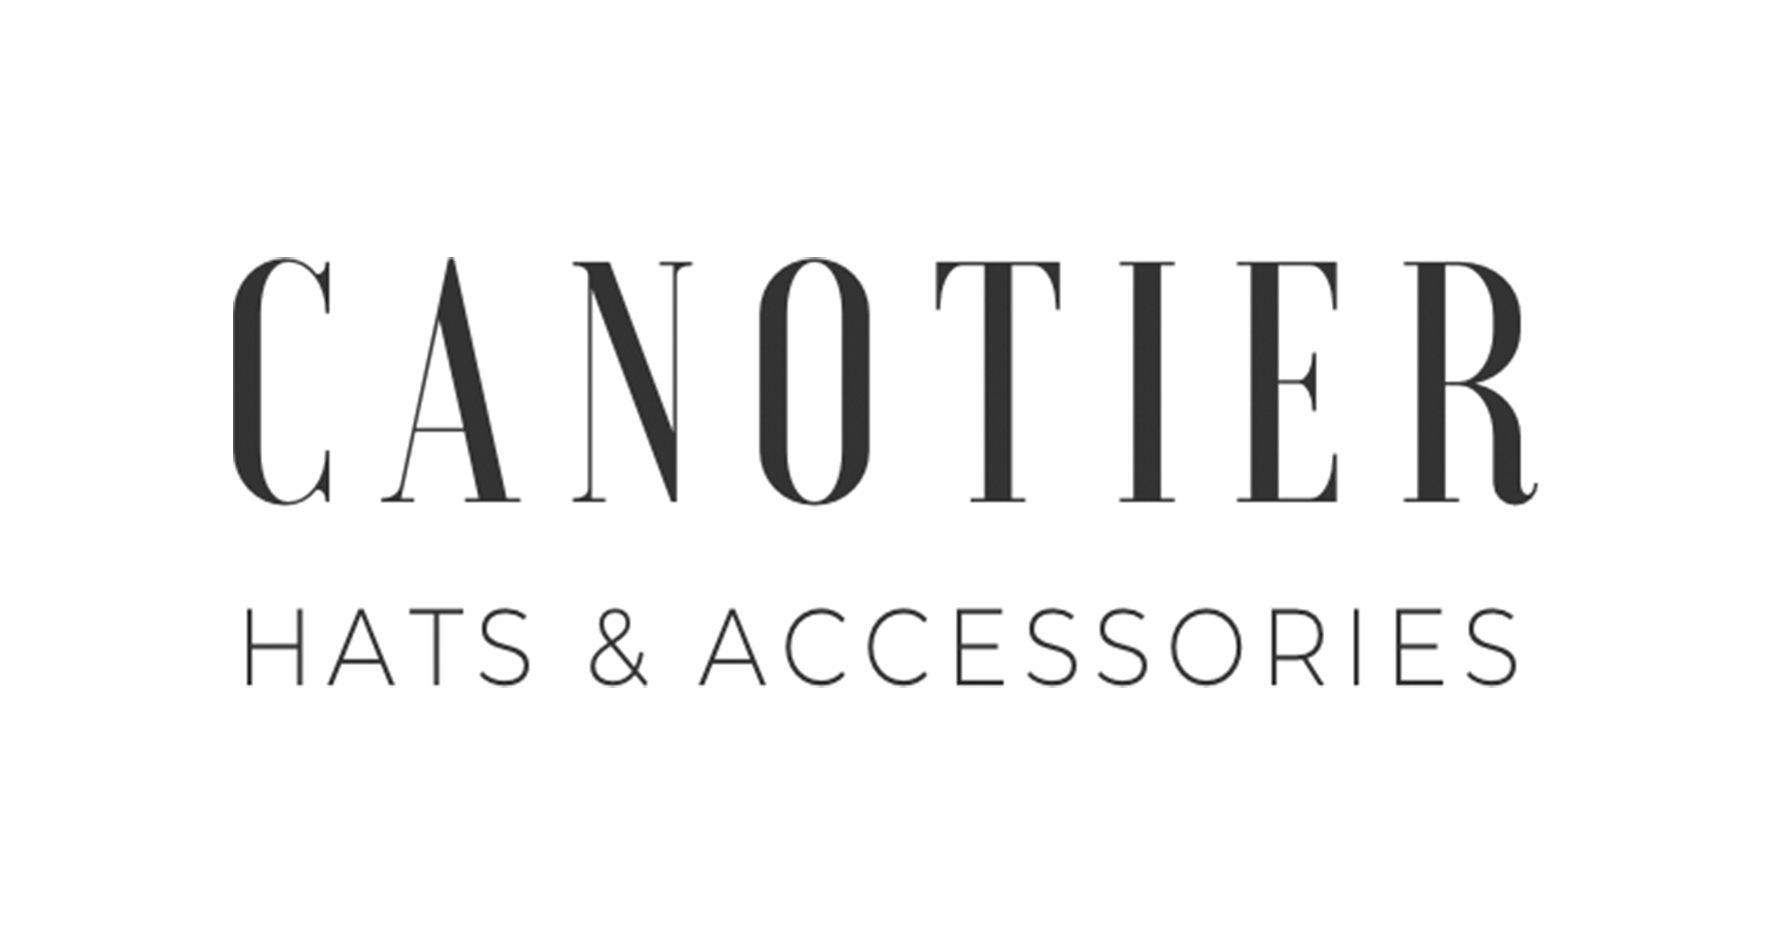 Canotier Одежда и аксессуары, купить онлайн, Canotier в универмаге Bolshoy